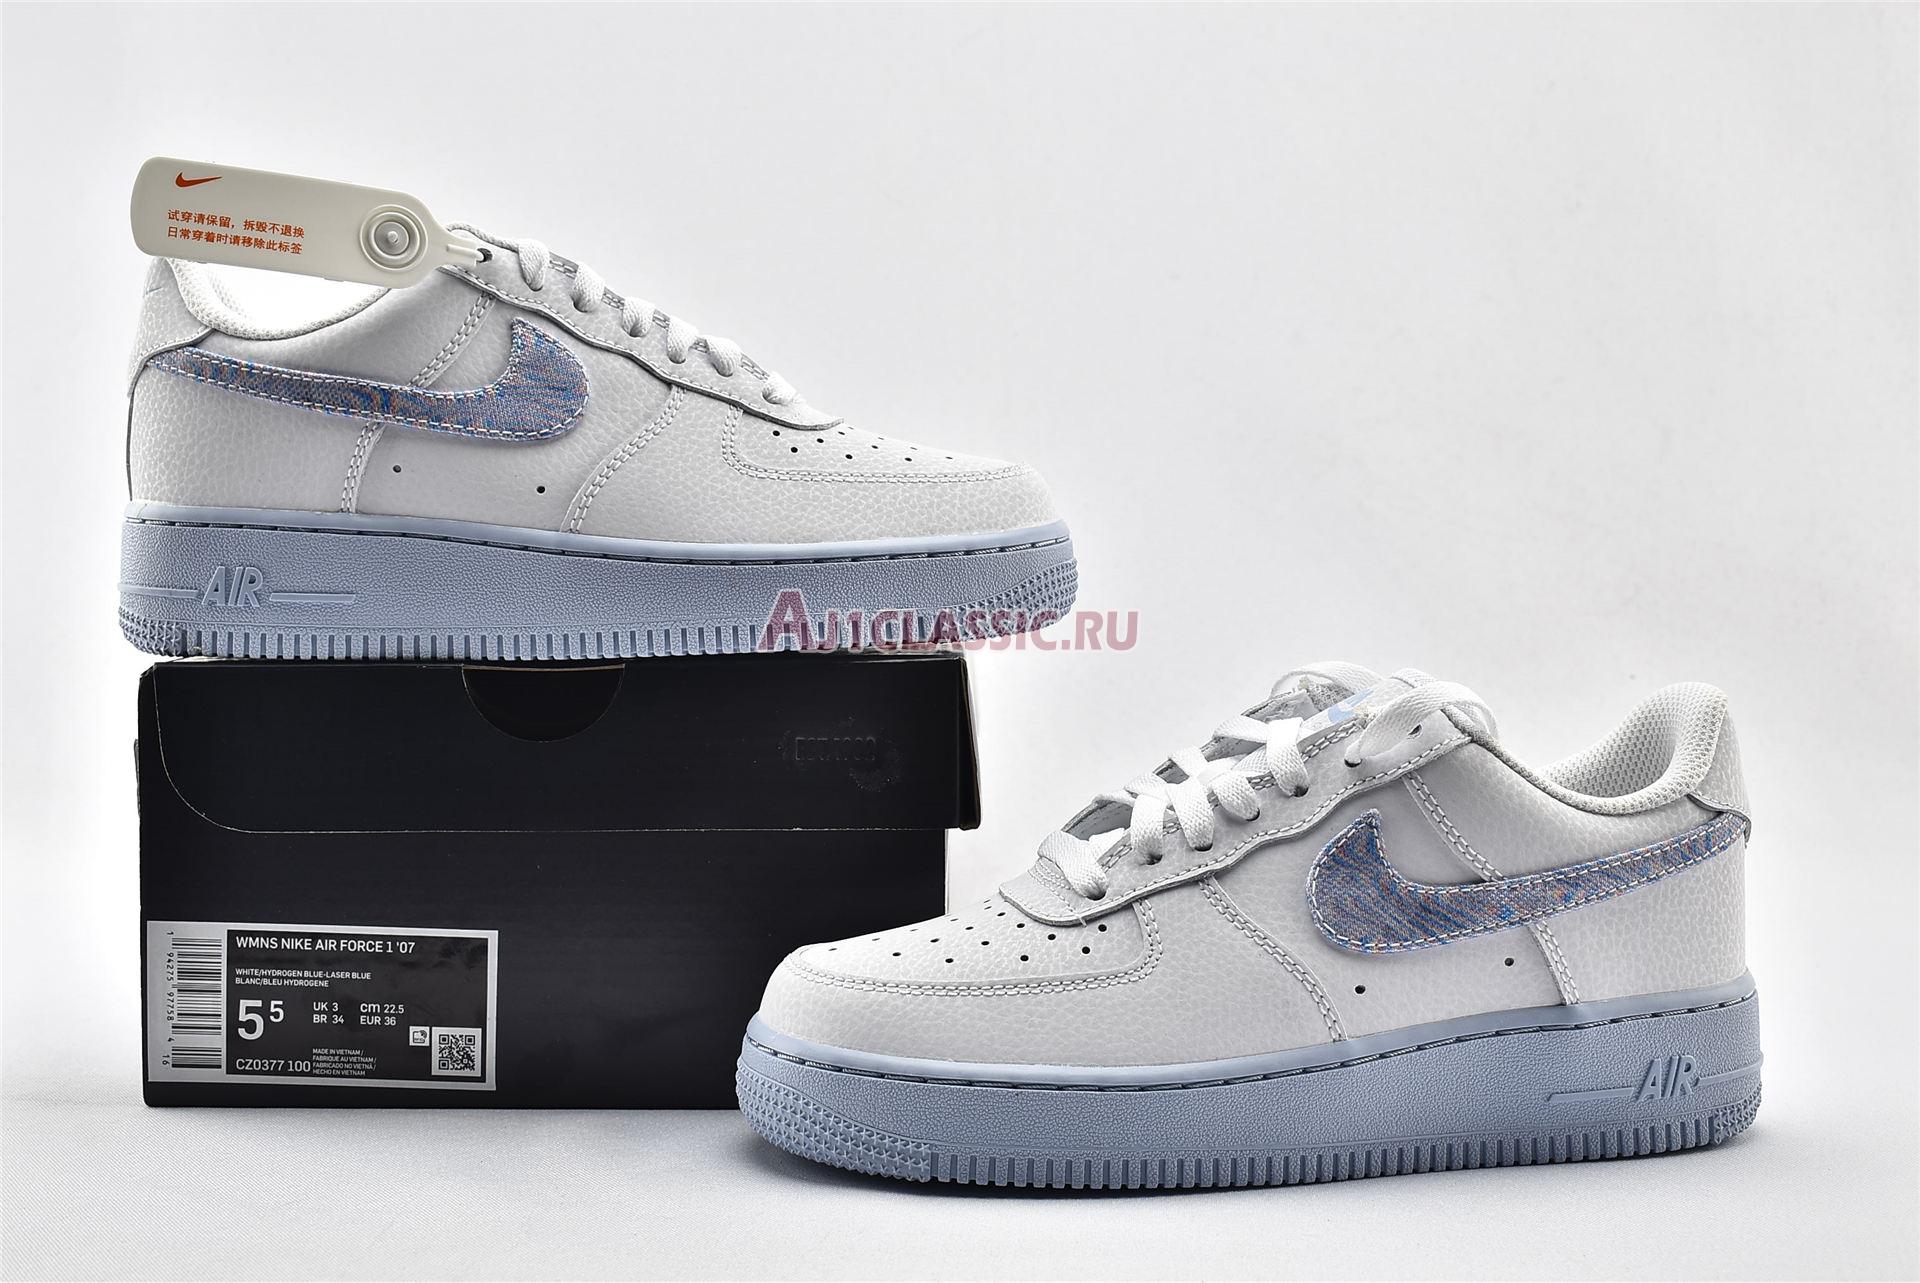 Nike Air Force 1 Low Hydrogen Blue CZ0377-100 White/Hydrogen Blue/Laser Blue Sneakers